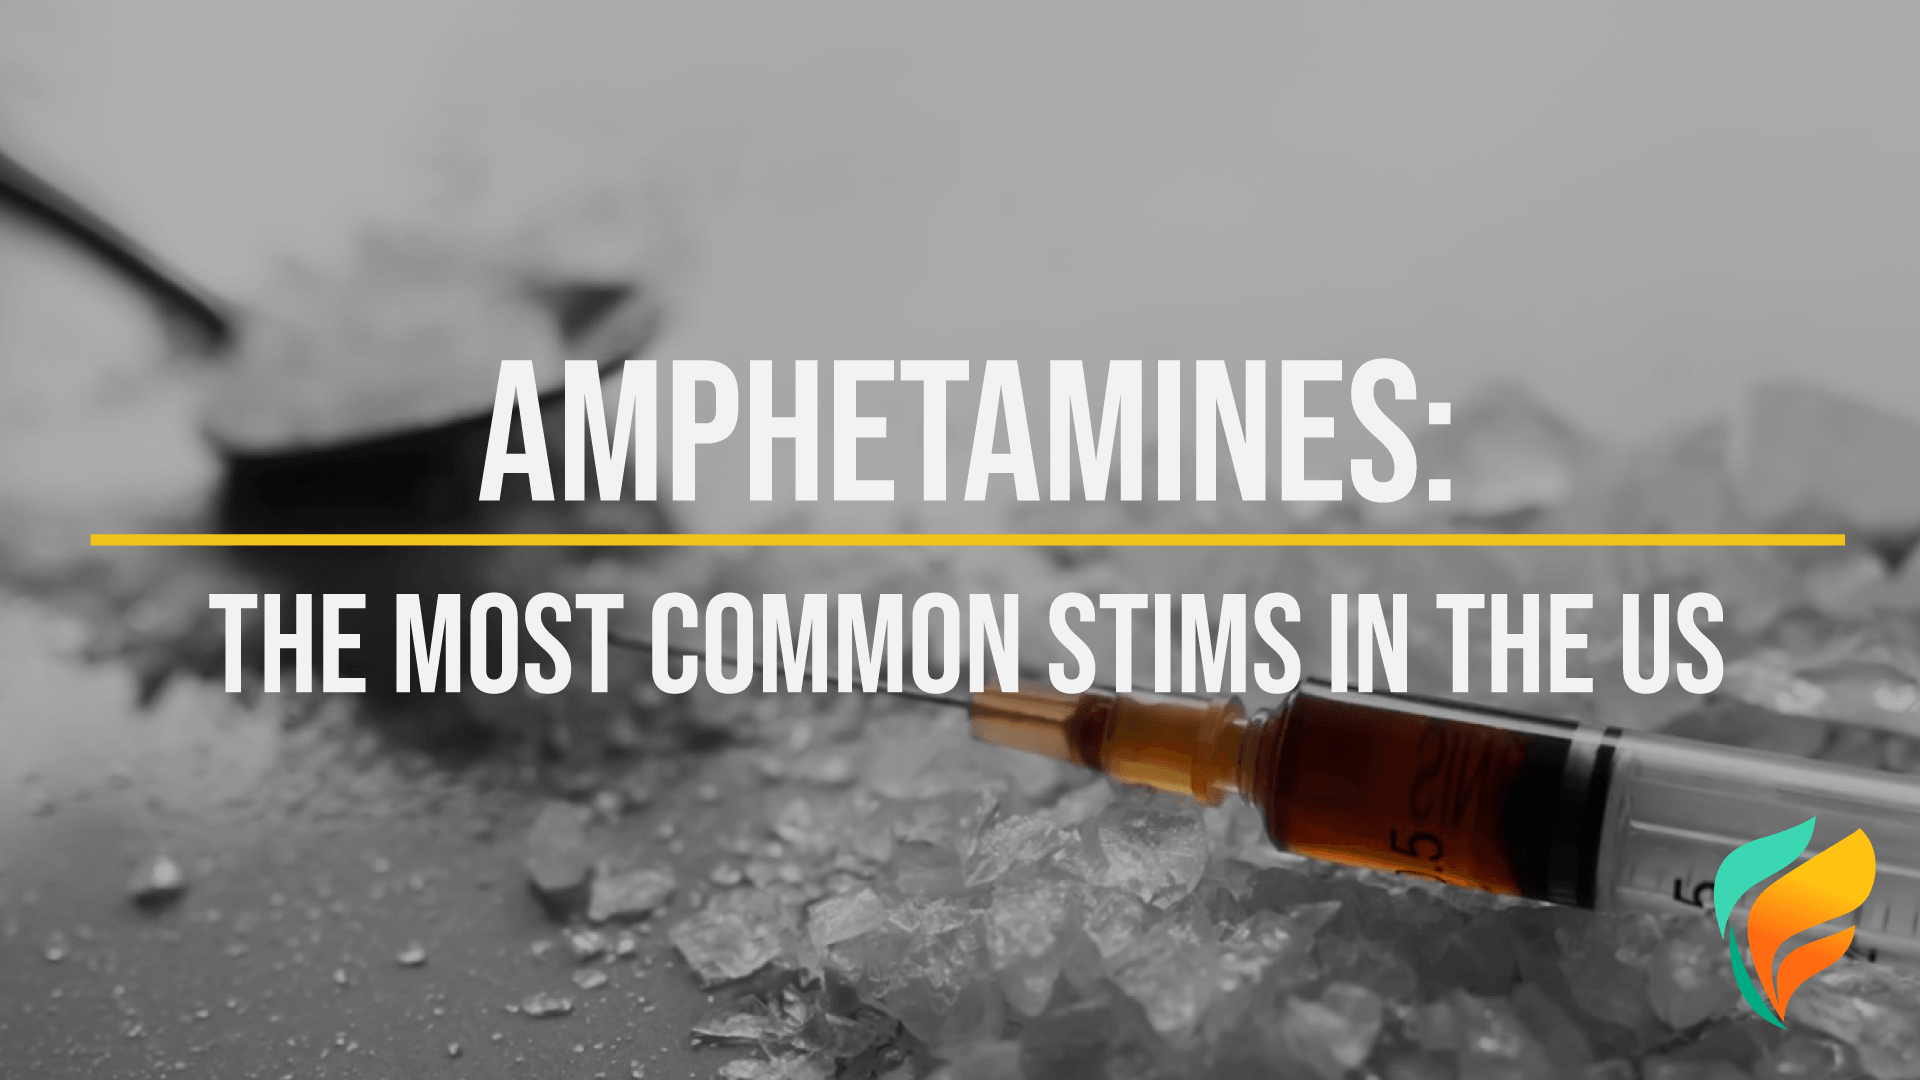 List of Amphetamines